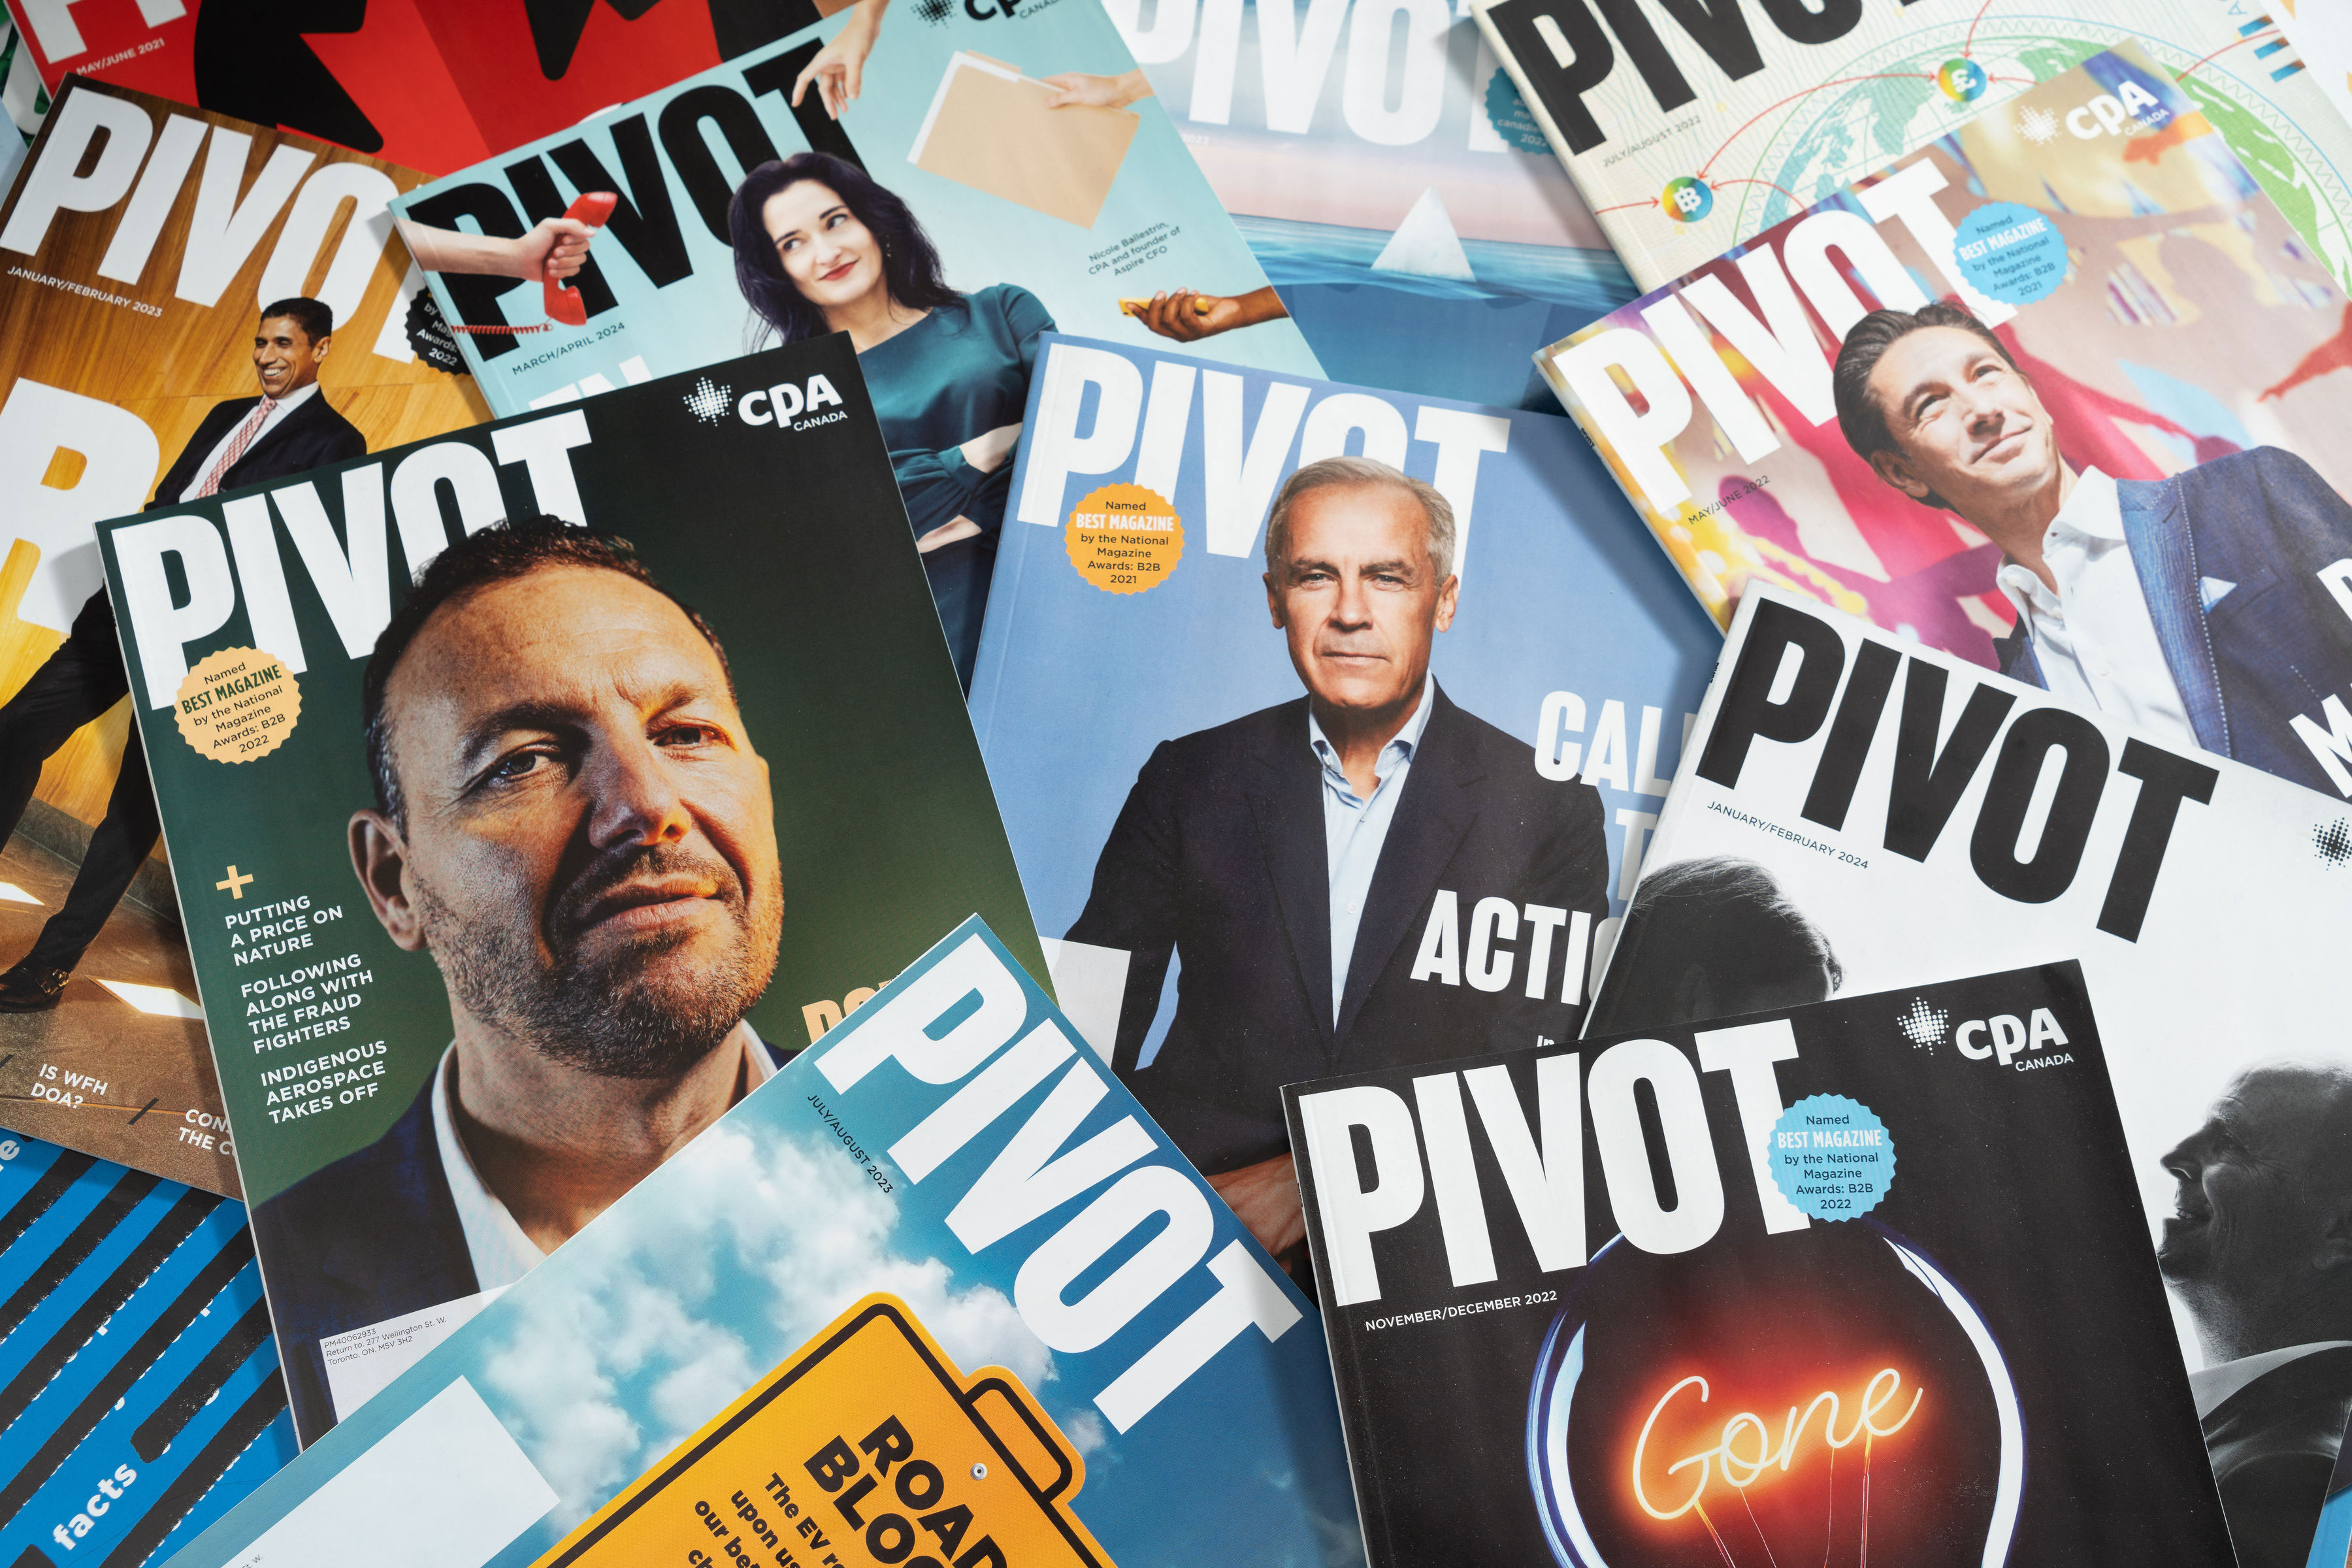 Copies of Pivot Magazine